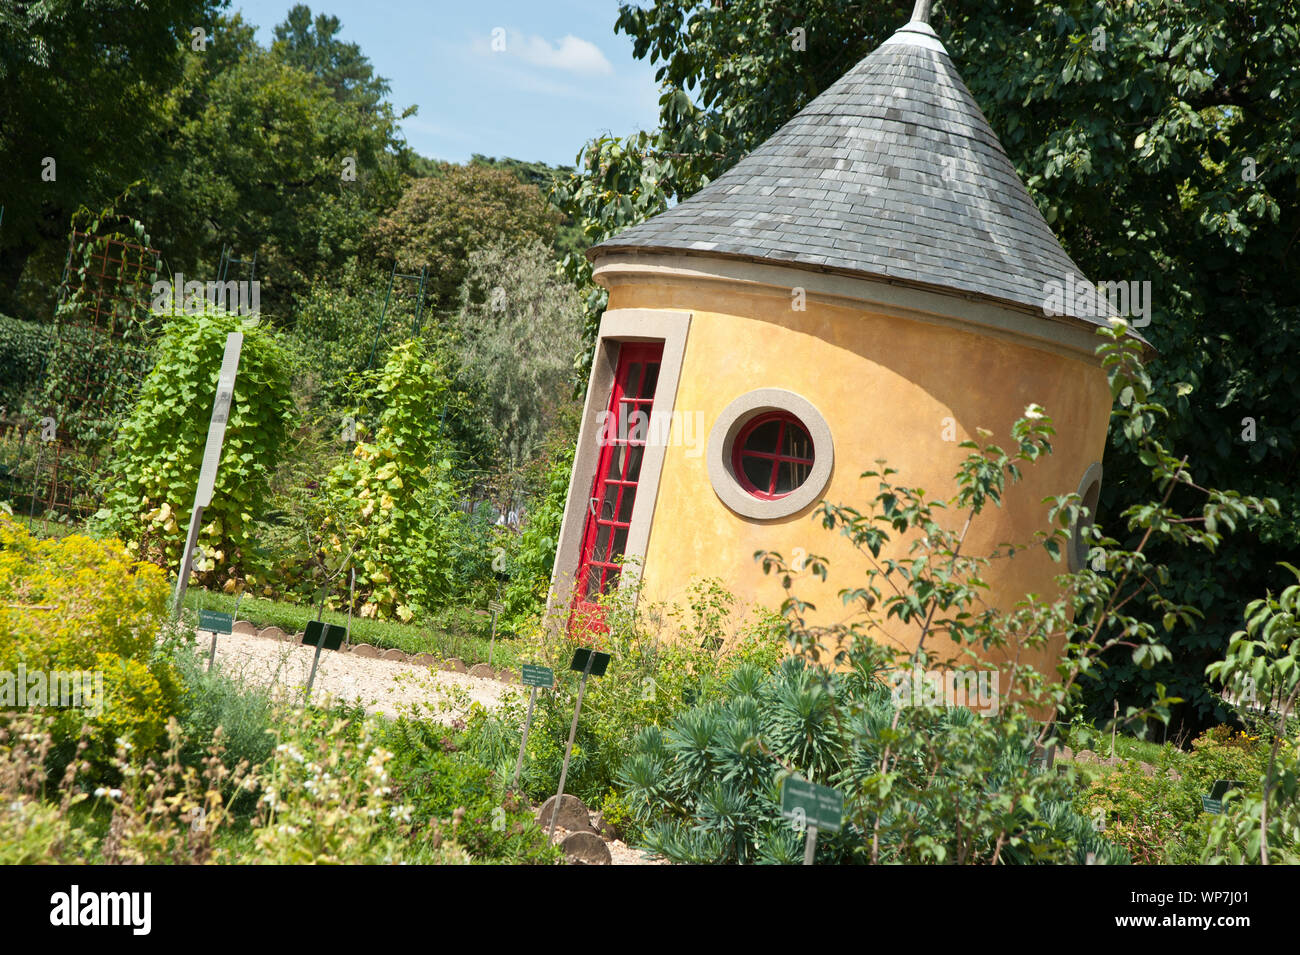 Der Jardin des Plantes ist ein Botanischer Garten in Paris mit einer Fläche von 23,5 ha. Er liegt im Südosten der Stadt, am südlichen Ufer der Seine i Stock Photo